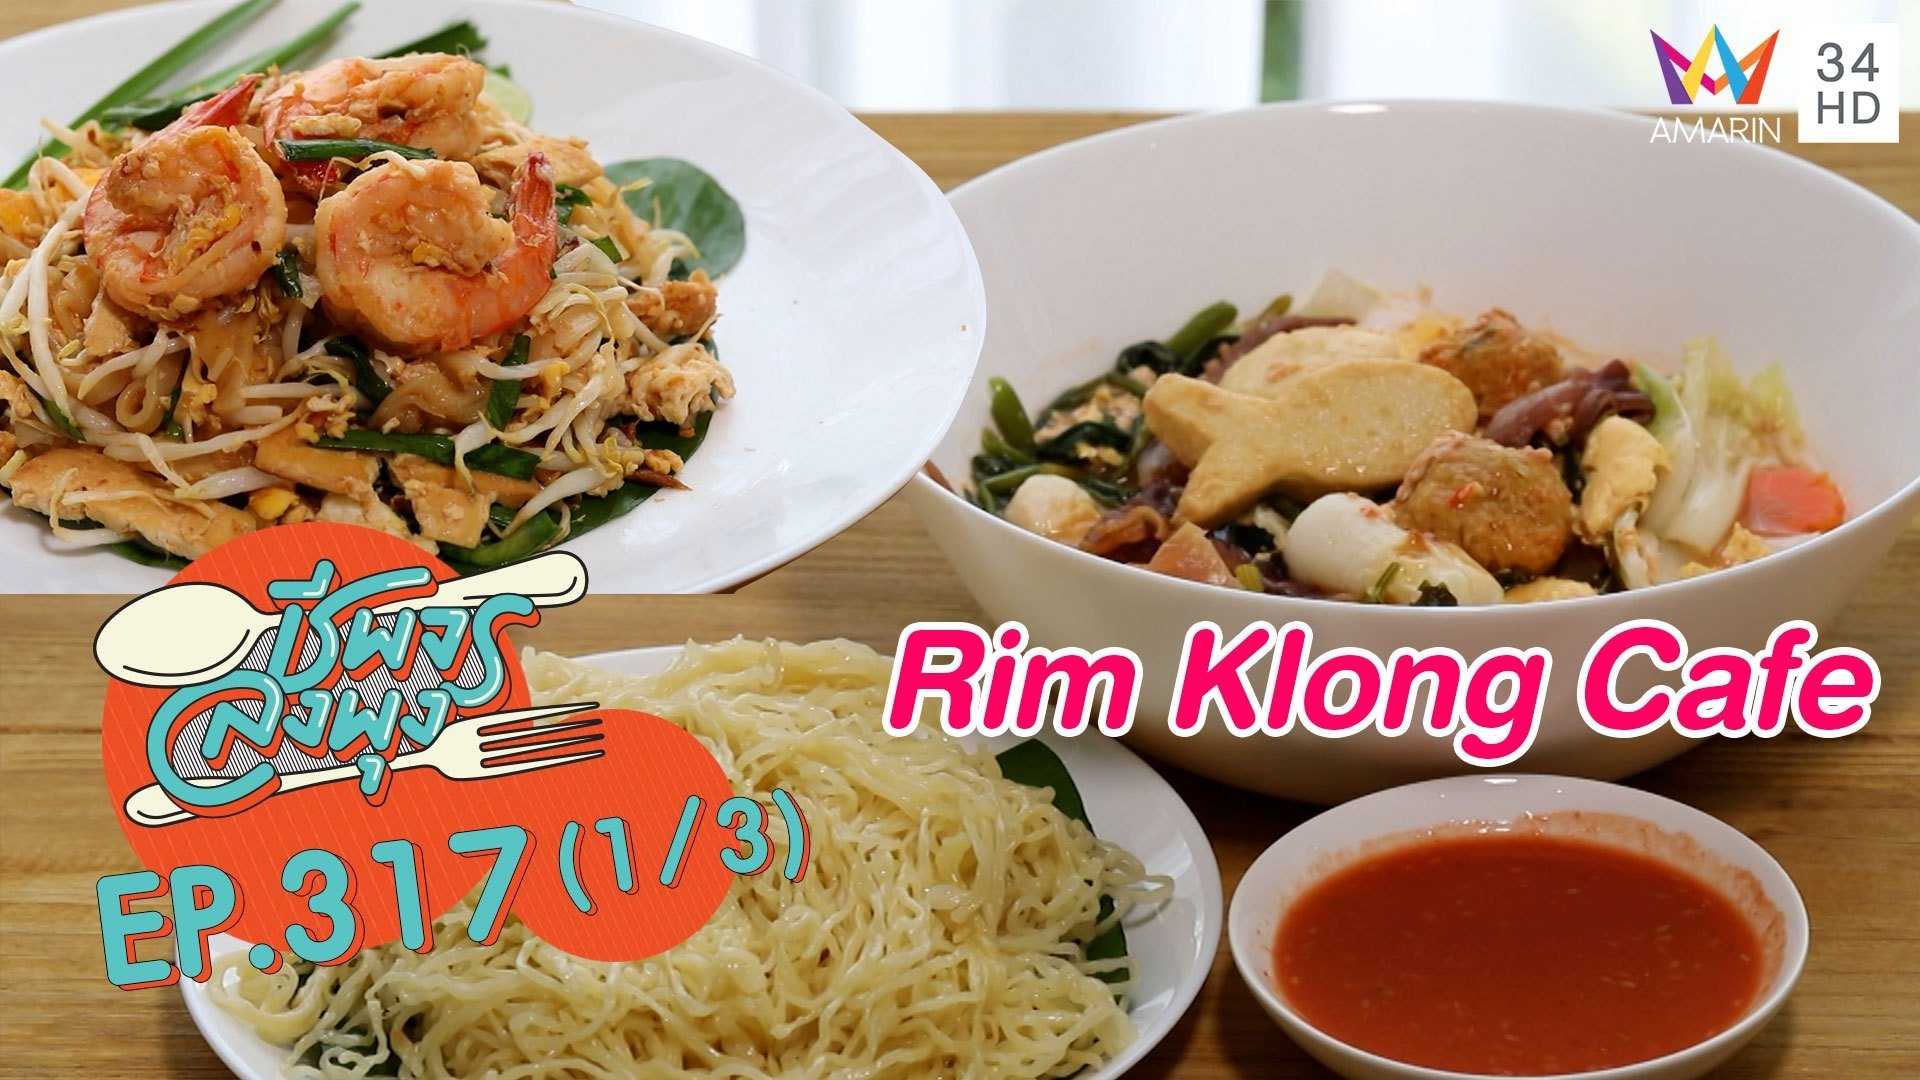 ผัดไทย-สุกี้เครื่องแน่นๆ @ ร้าน Rim Klong Cafe | ชีพจรลงพุง | 21 ส.ค. 64 (1/3) | AMARIN TVHD34